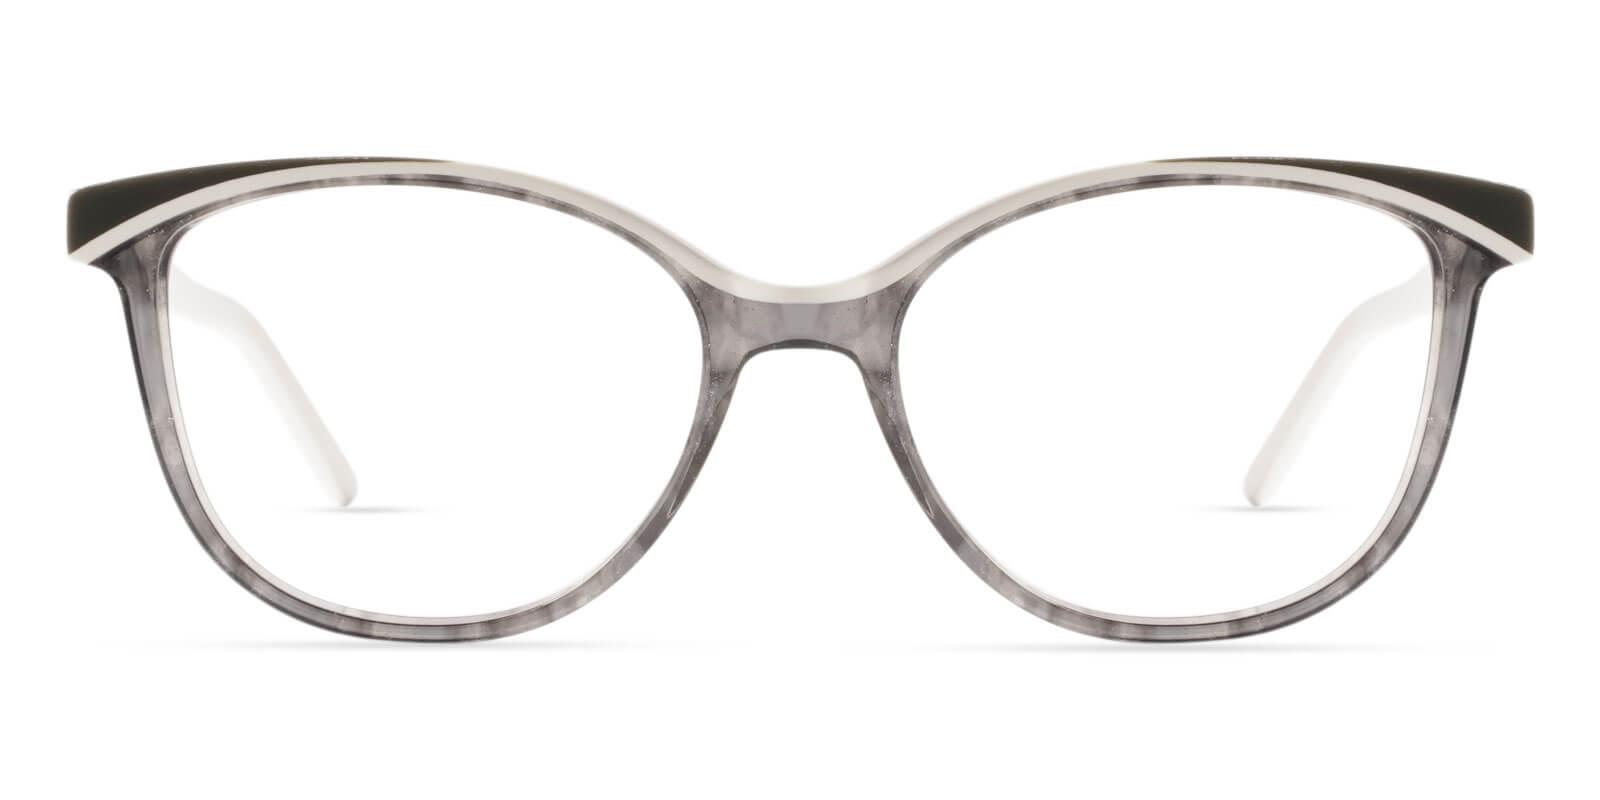 Salzburg White Acetate Eyeglasses , UniversalBridgeFit Frames from ABBE Glasses